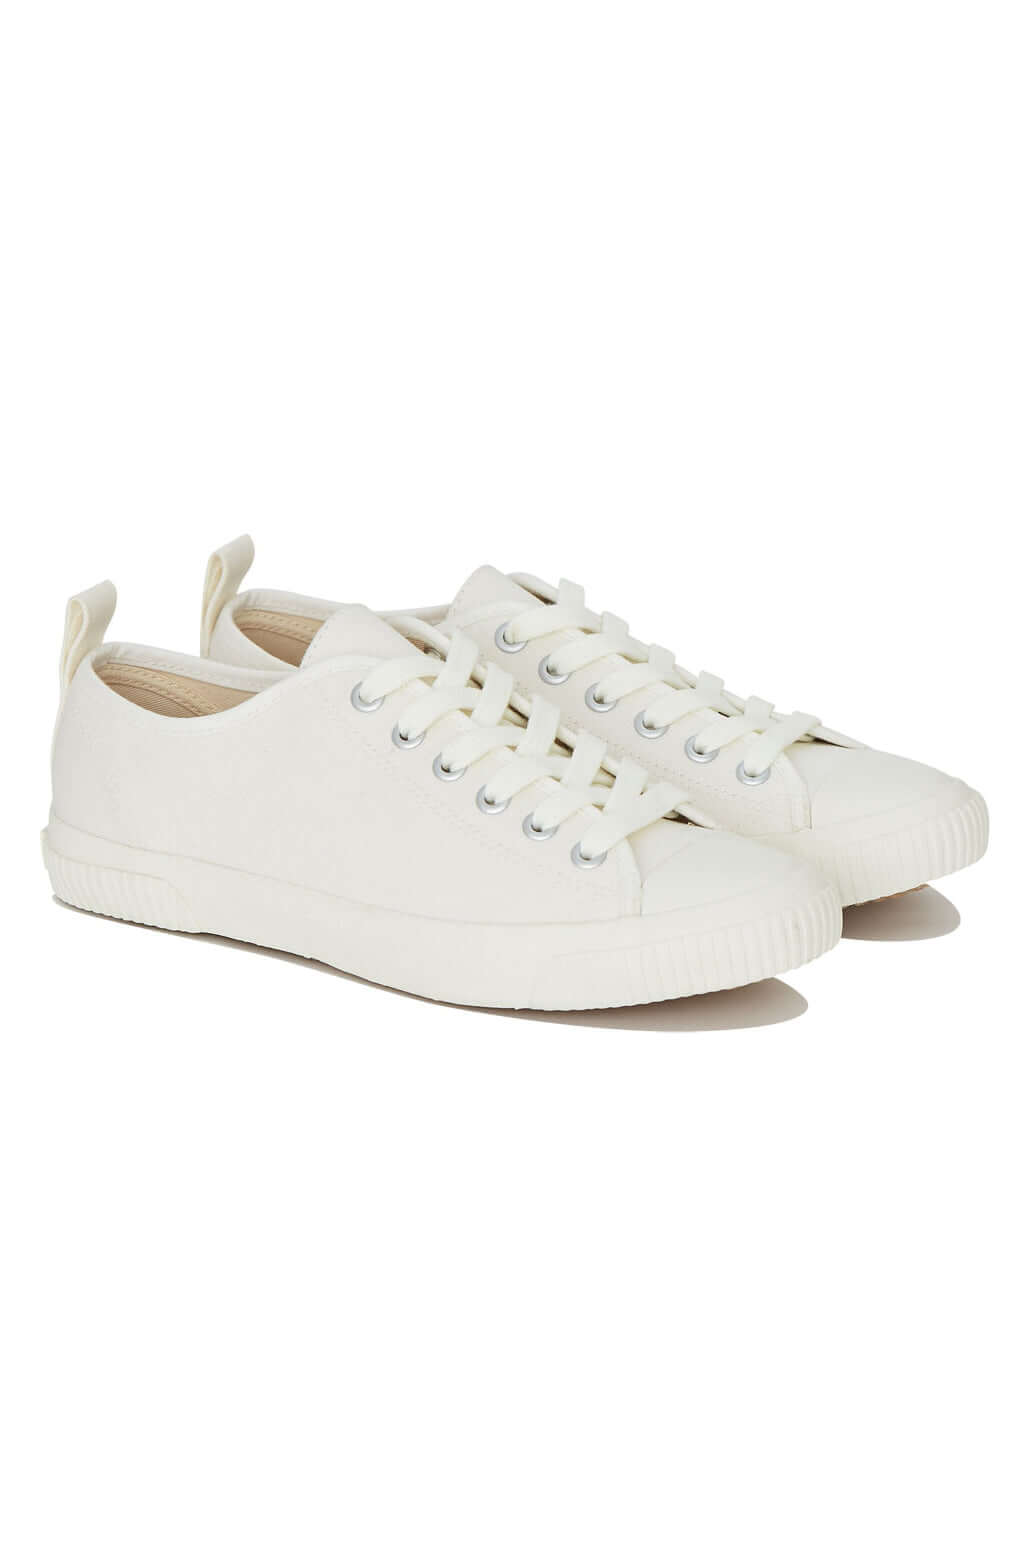 ECO SNEAKO - CLASSIC Womens Shoe White 2.0, EURO 38